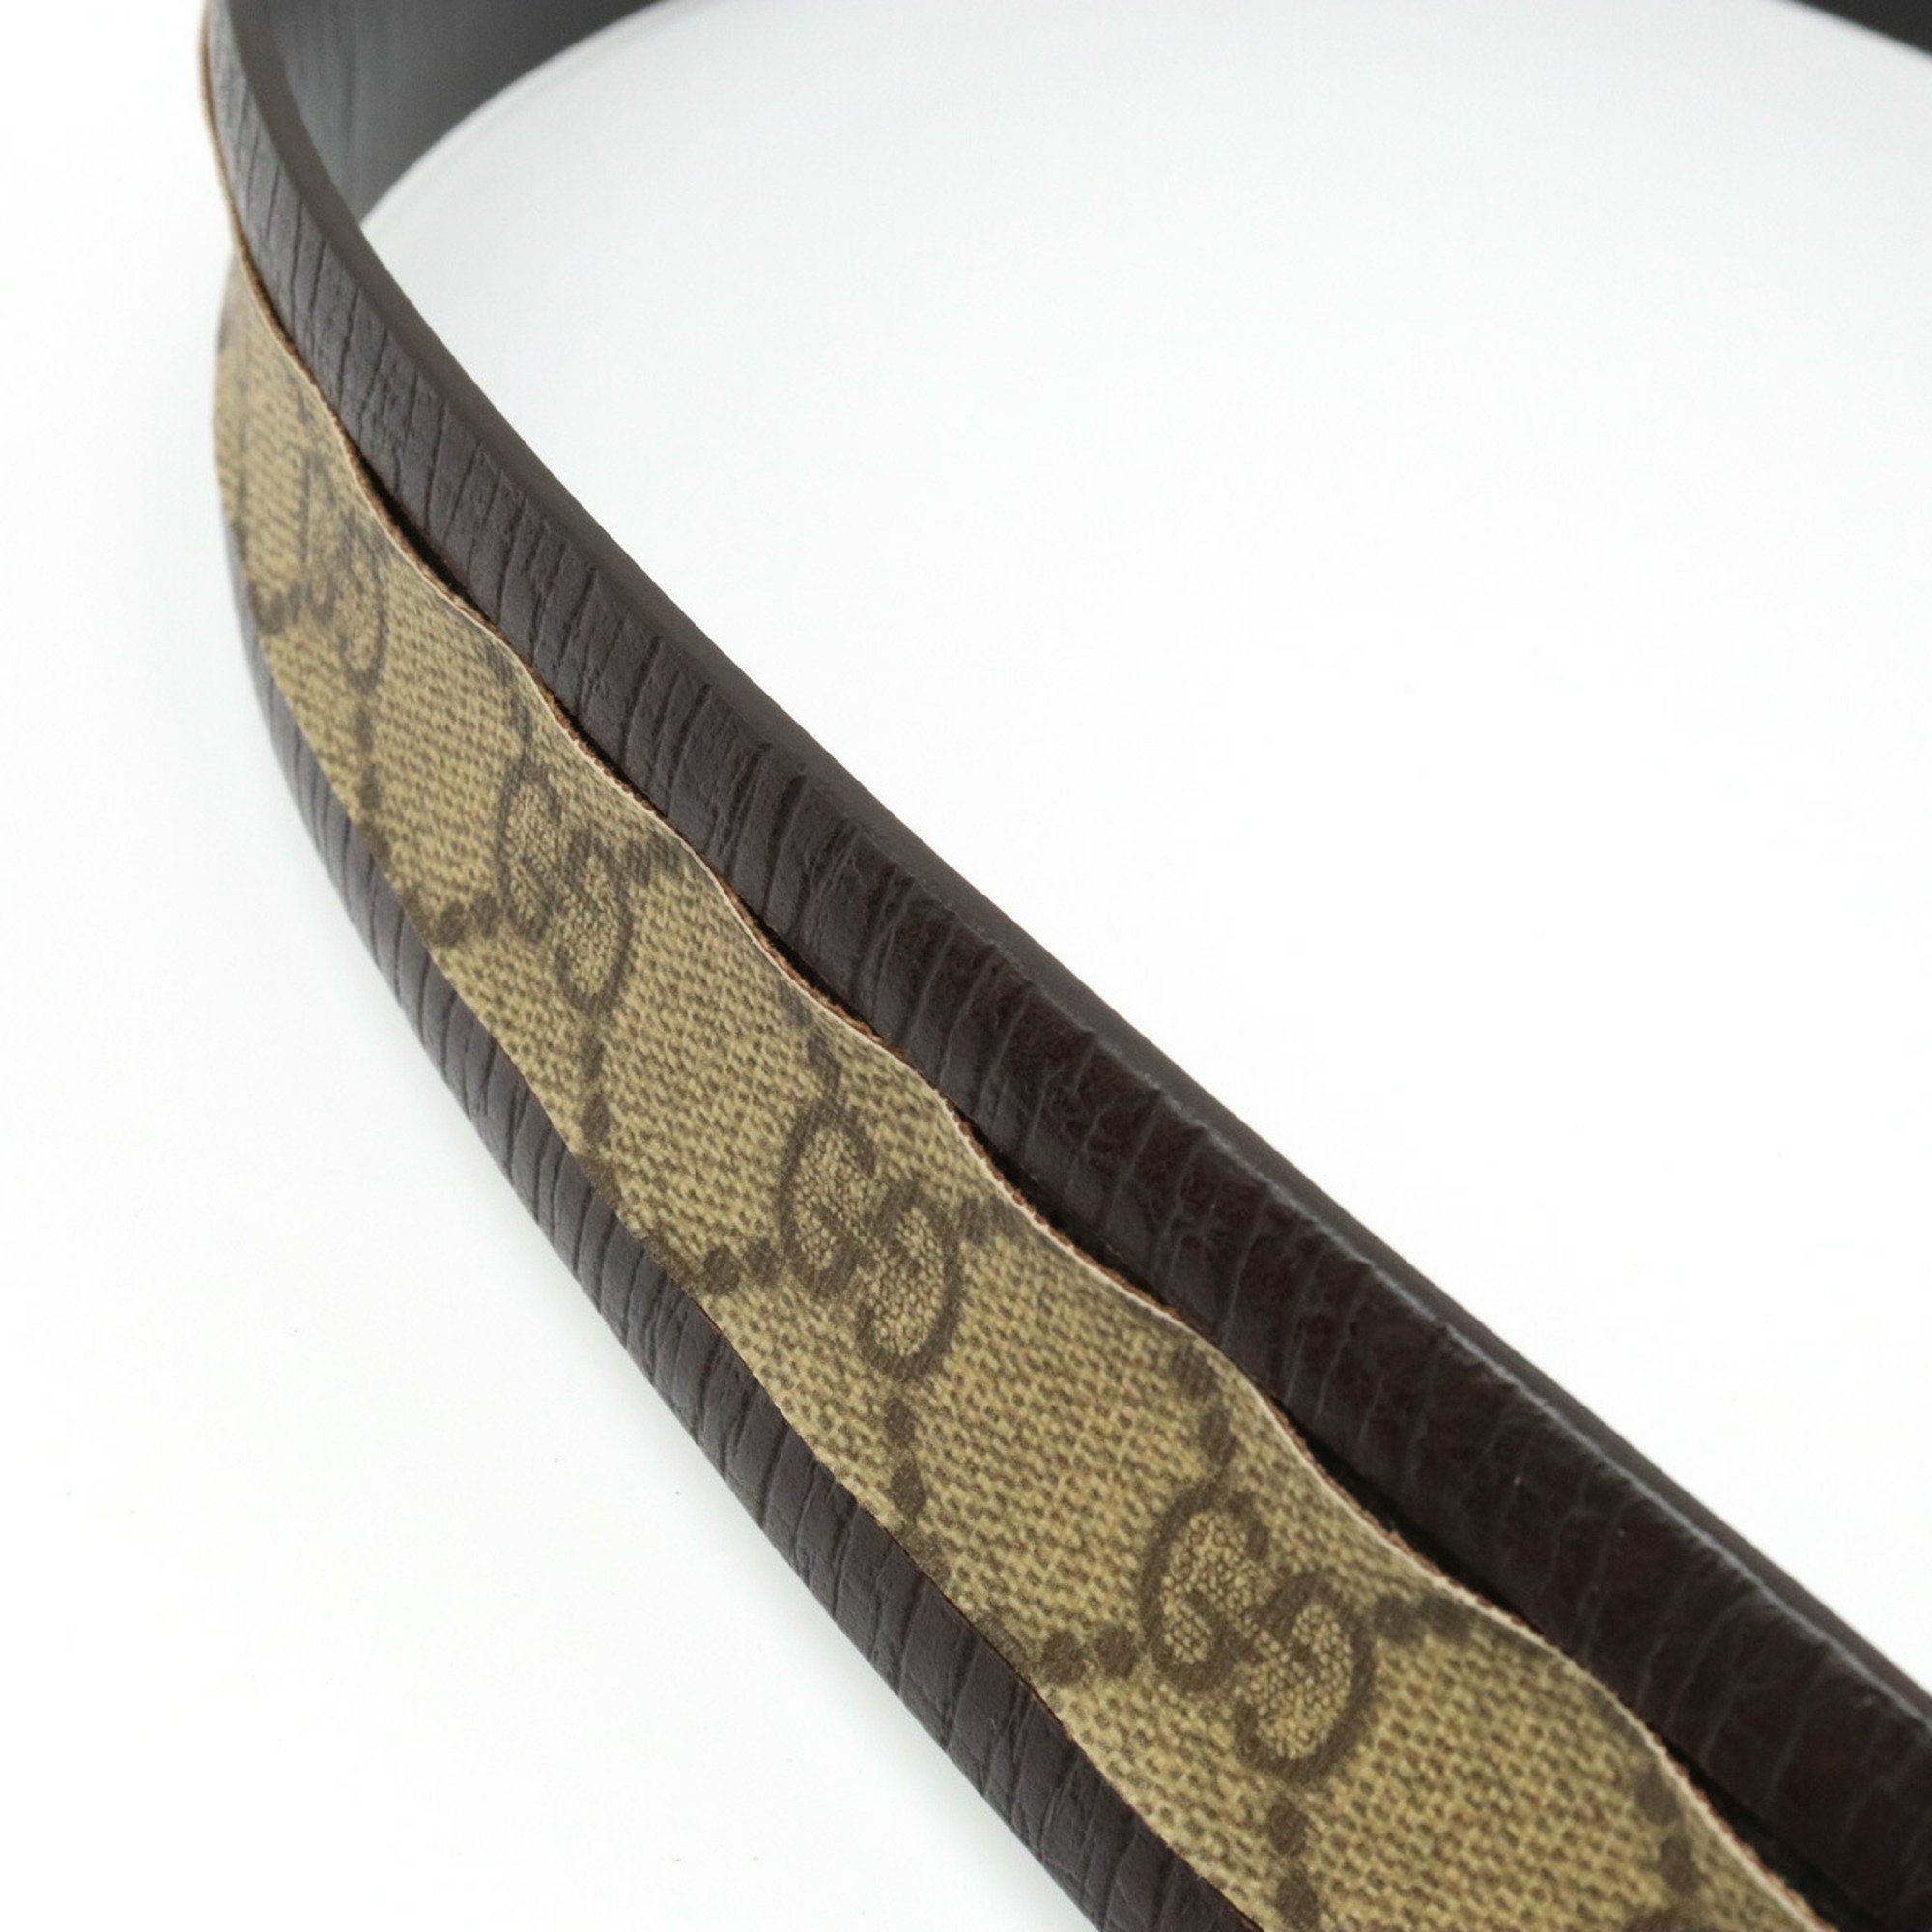 GUCCI GG Supreme Interlocking G Belt PVC Leather Dark Brown Khaki Beige #80 142931